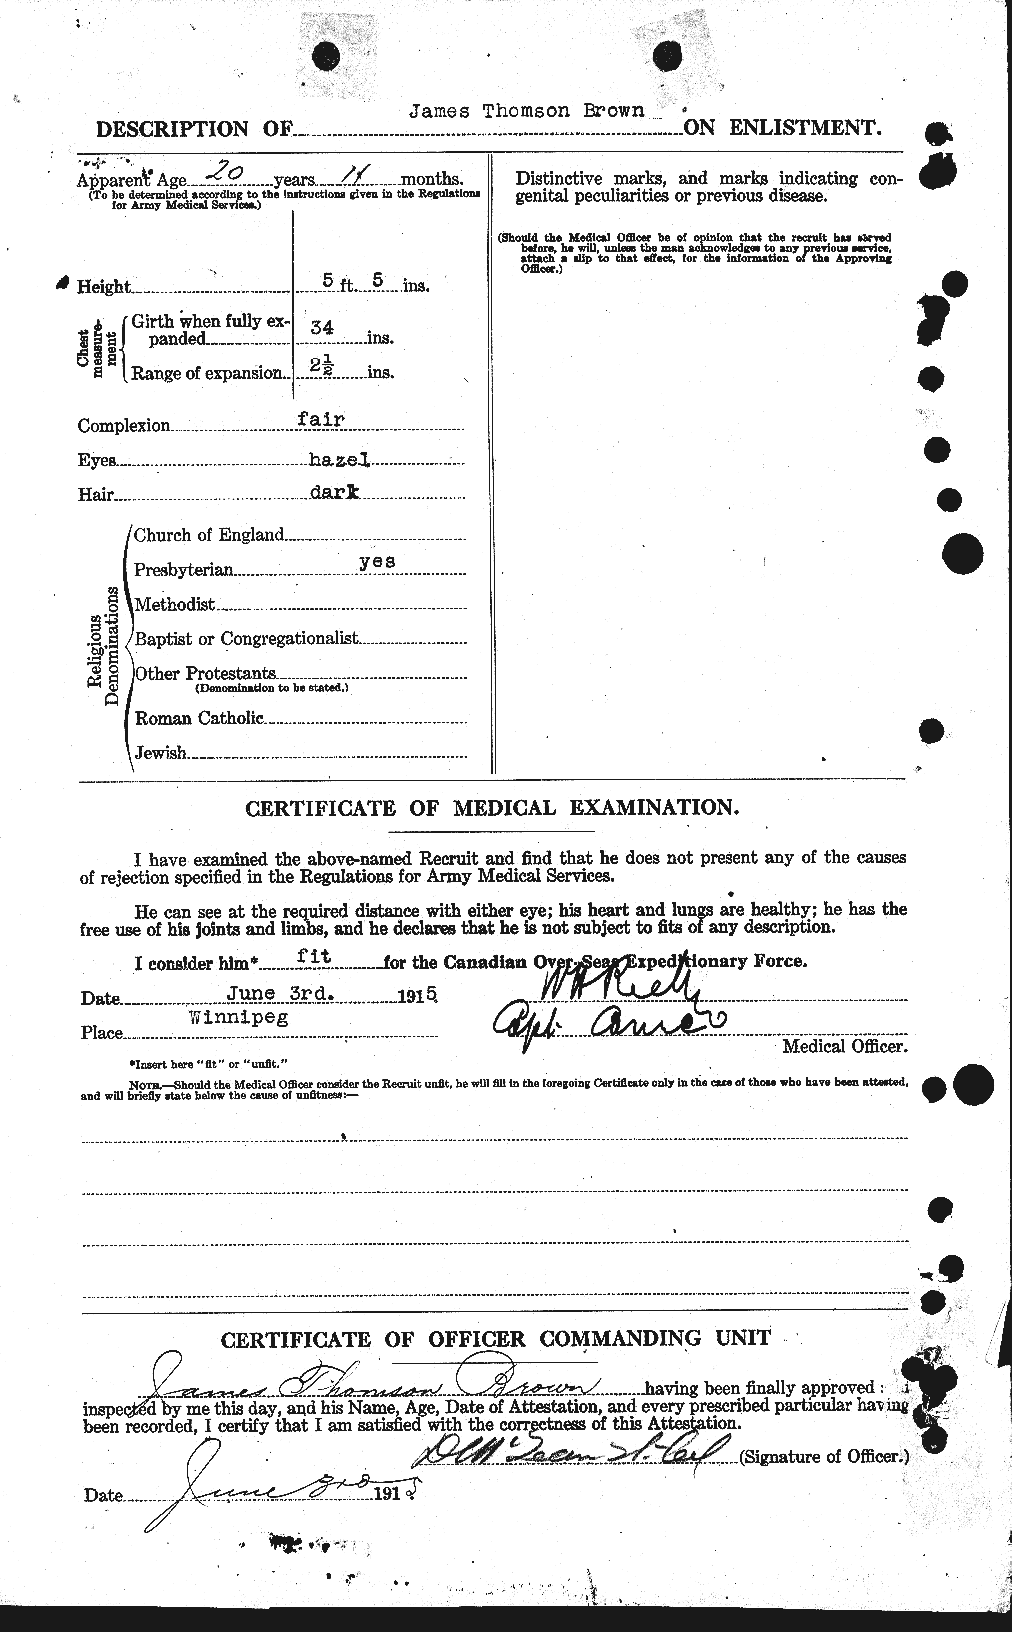 Dossiers du Personnel de la Première Guerre mondiale - CEC 269591b